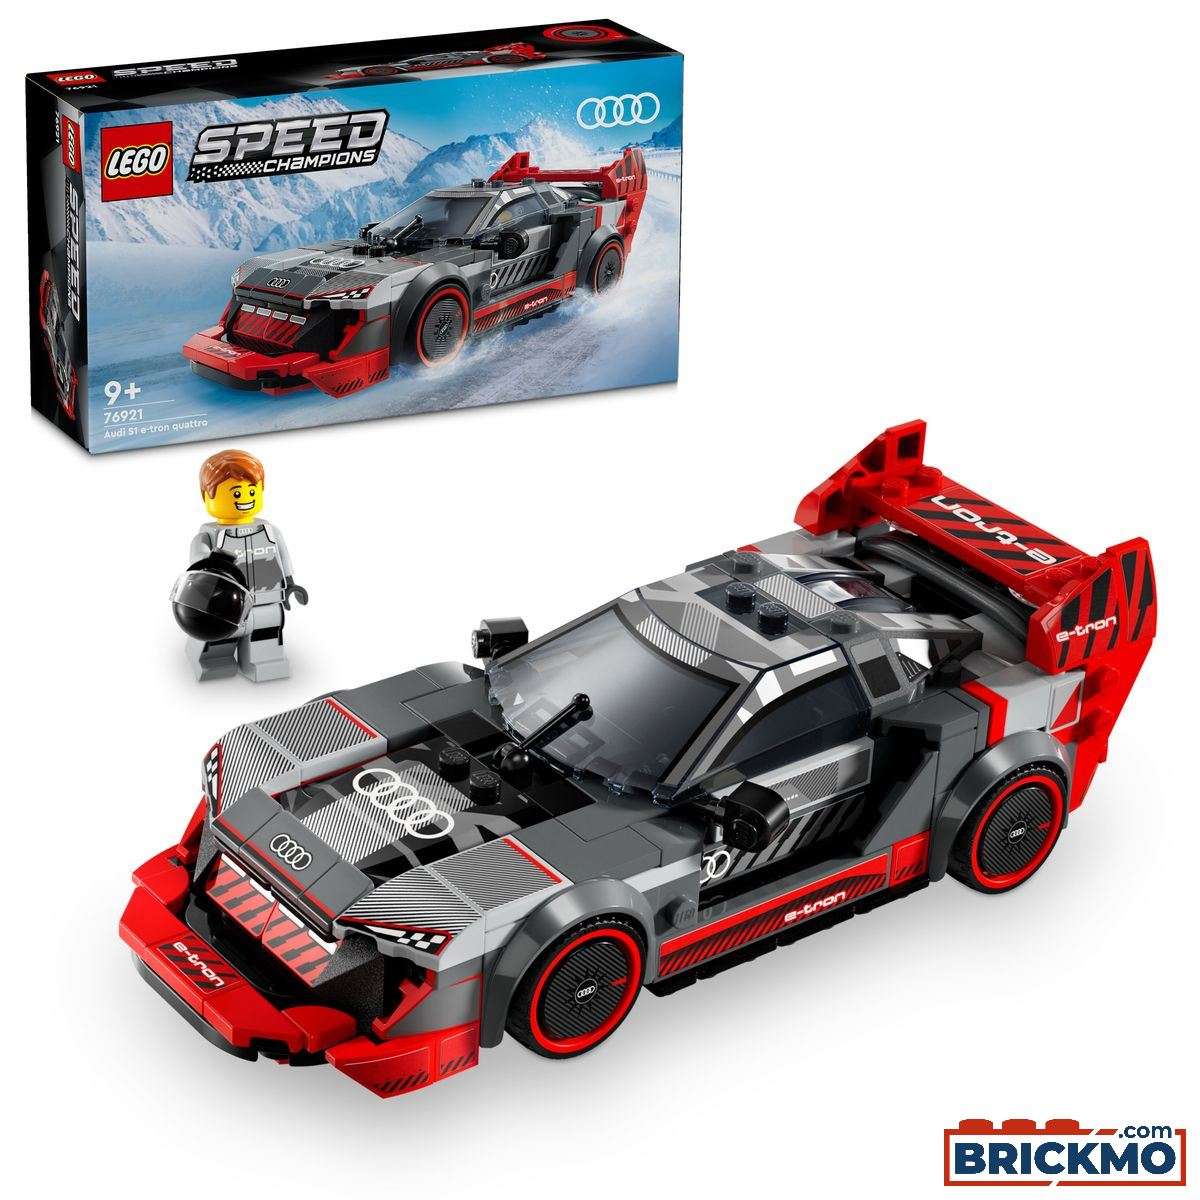 LEGO Speed Champions 76921 Coche de Carreras Audi S1 e-tron quattro 76921